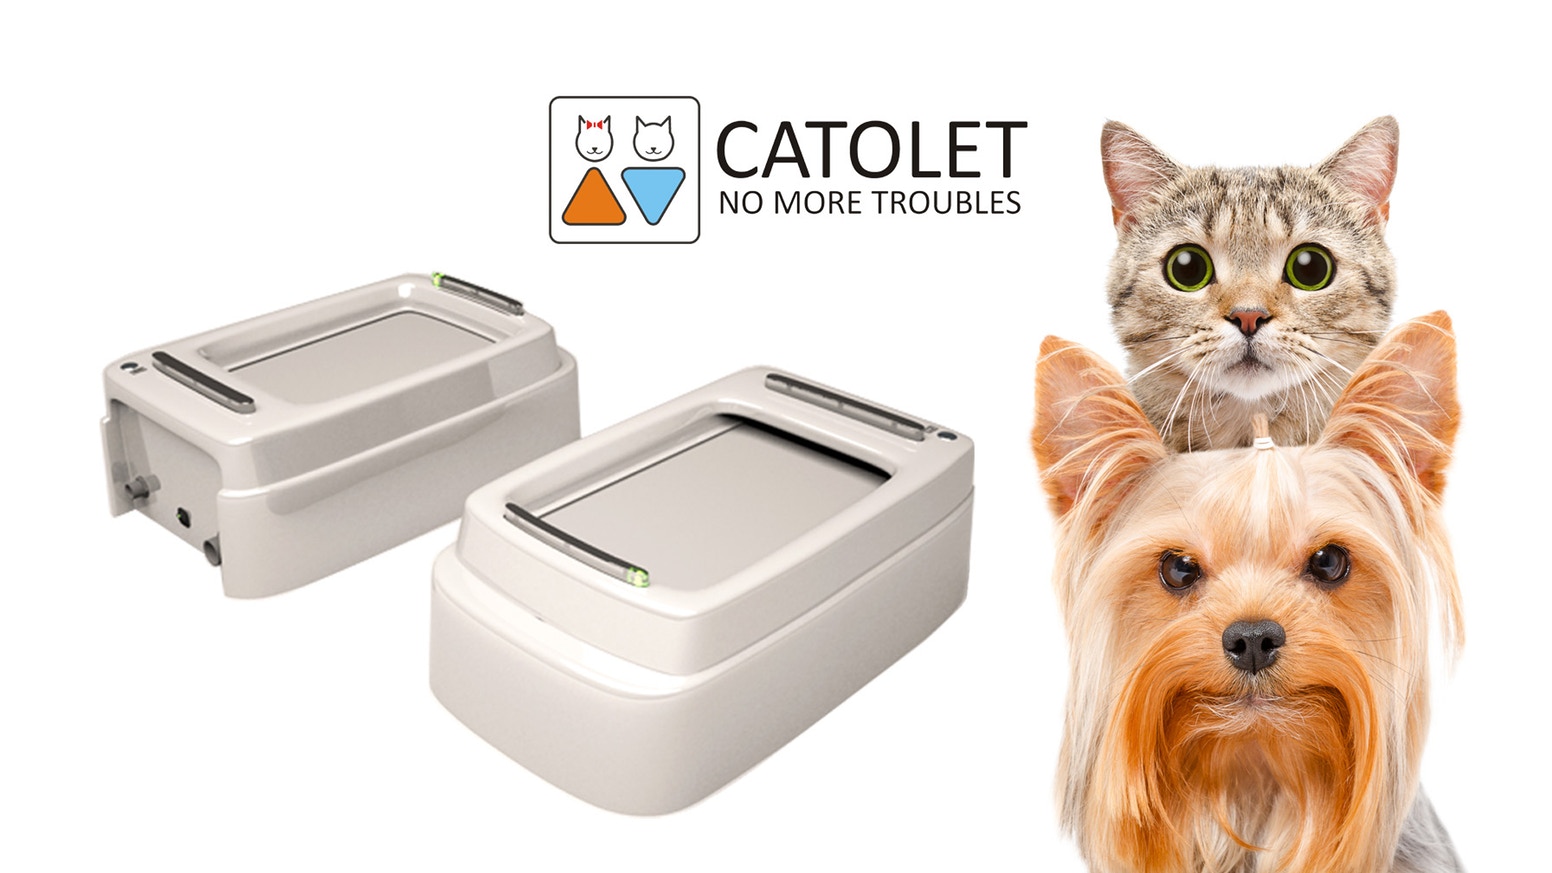 Catolet, una caja de arena automática para gatos que recaudó más de 66.500 dólares